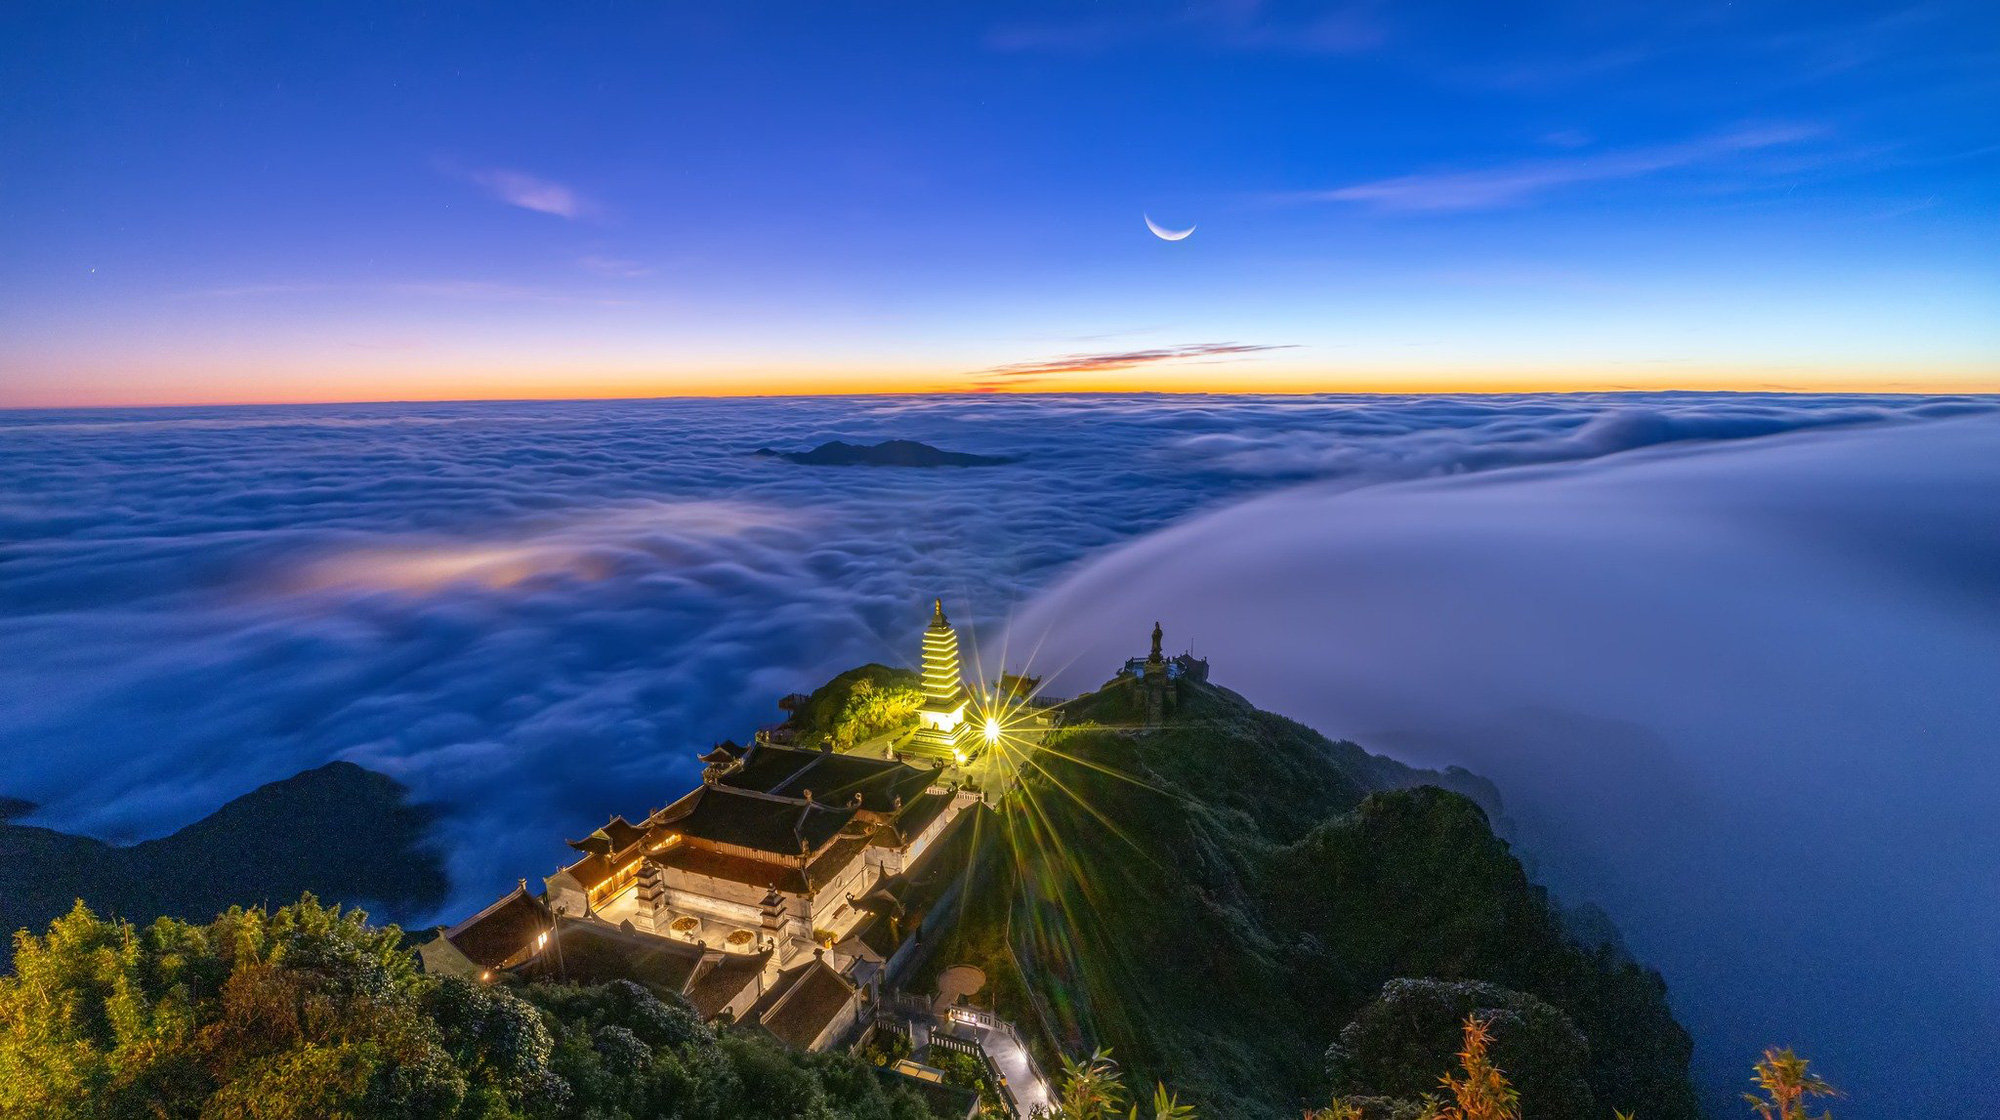 Đầu tháng 10, hàng nghìn du khách đã kháo nhau tới đỉnh thiêng Fansipan để chiêm ngưỡng khung cảnh biển mây huyền ảo - Ảnh: Hoàng Trung Hiếu